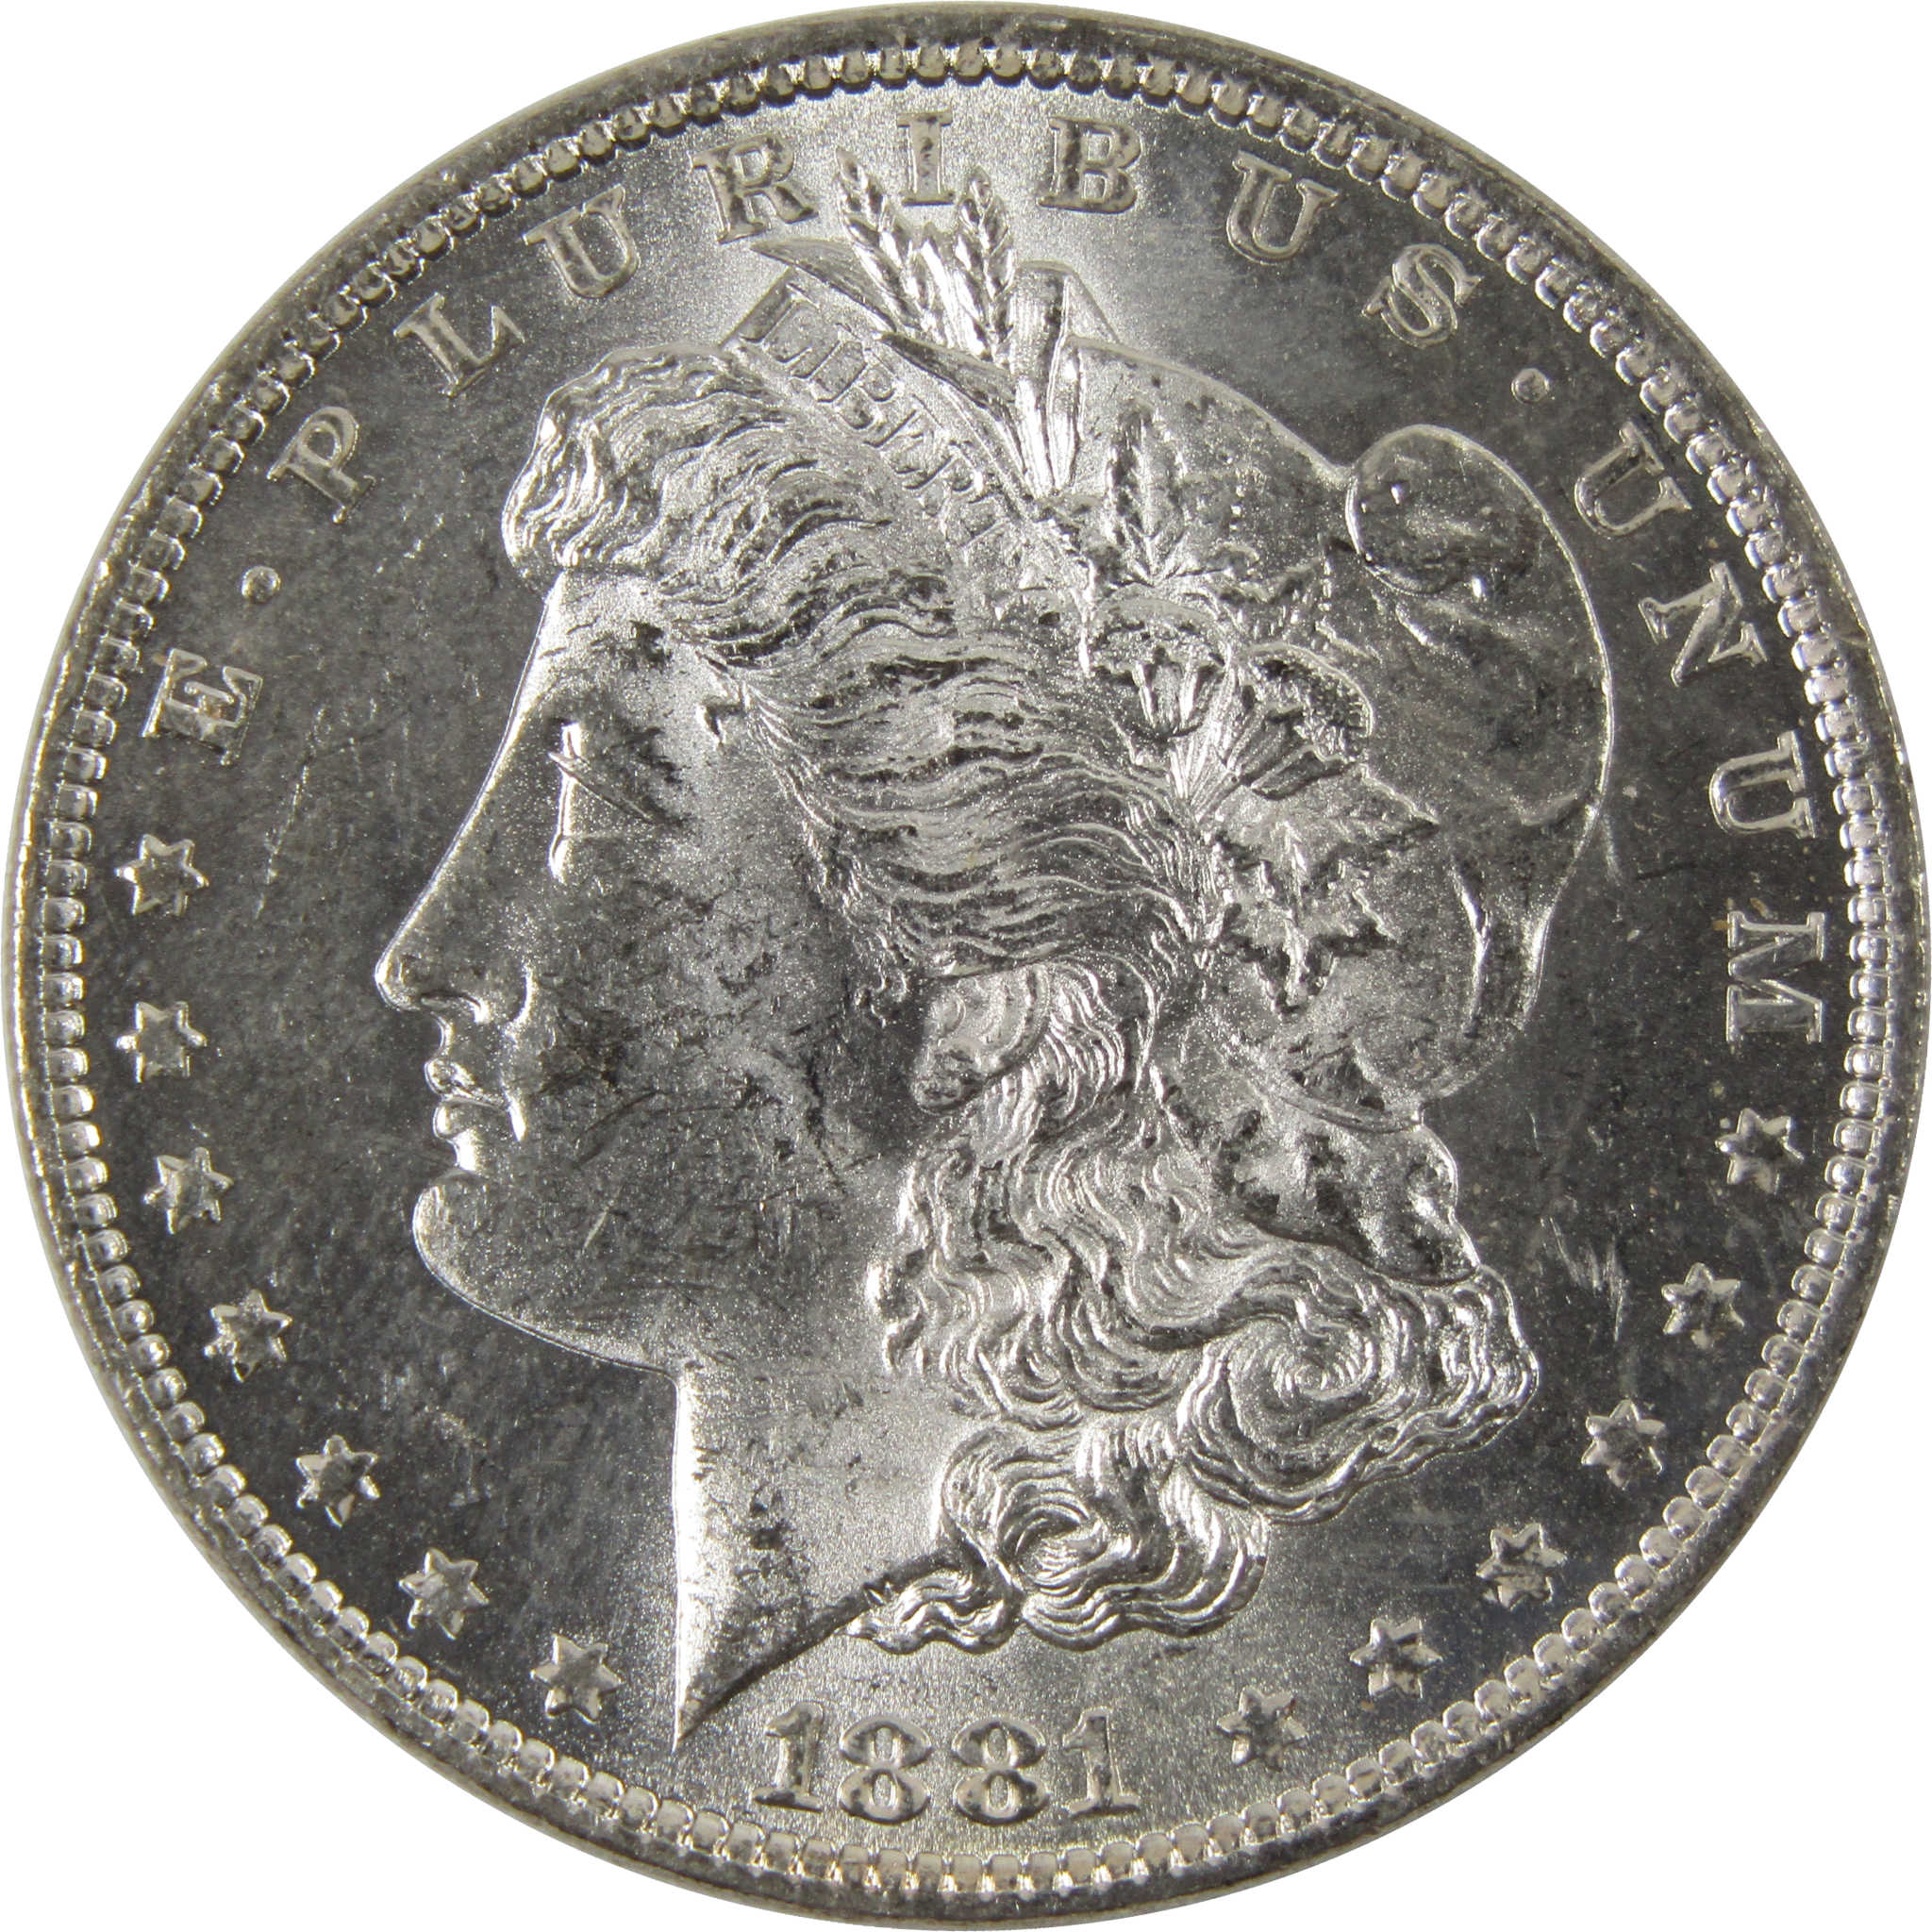 1881 O Morgan Dollar BU Uncirculated 90% Silver $1 Coin SKU:I8482 - Morgan coin - Morgan silver dollar - Morgan silver dollar for sale - Profile Coins &amp; Collectibles